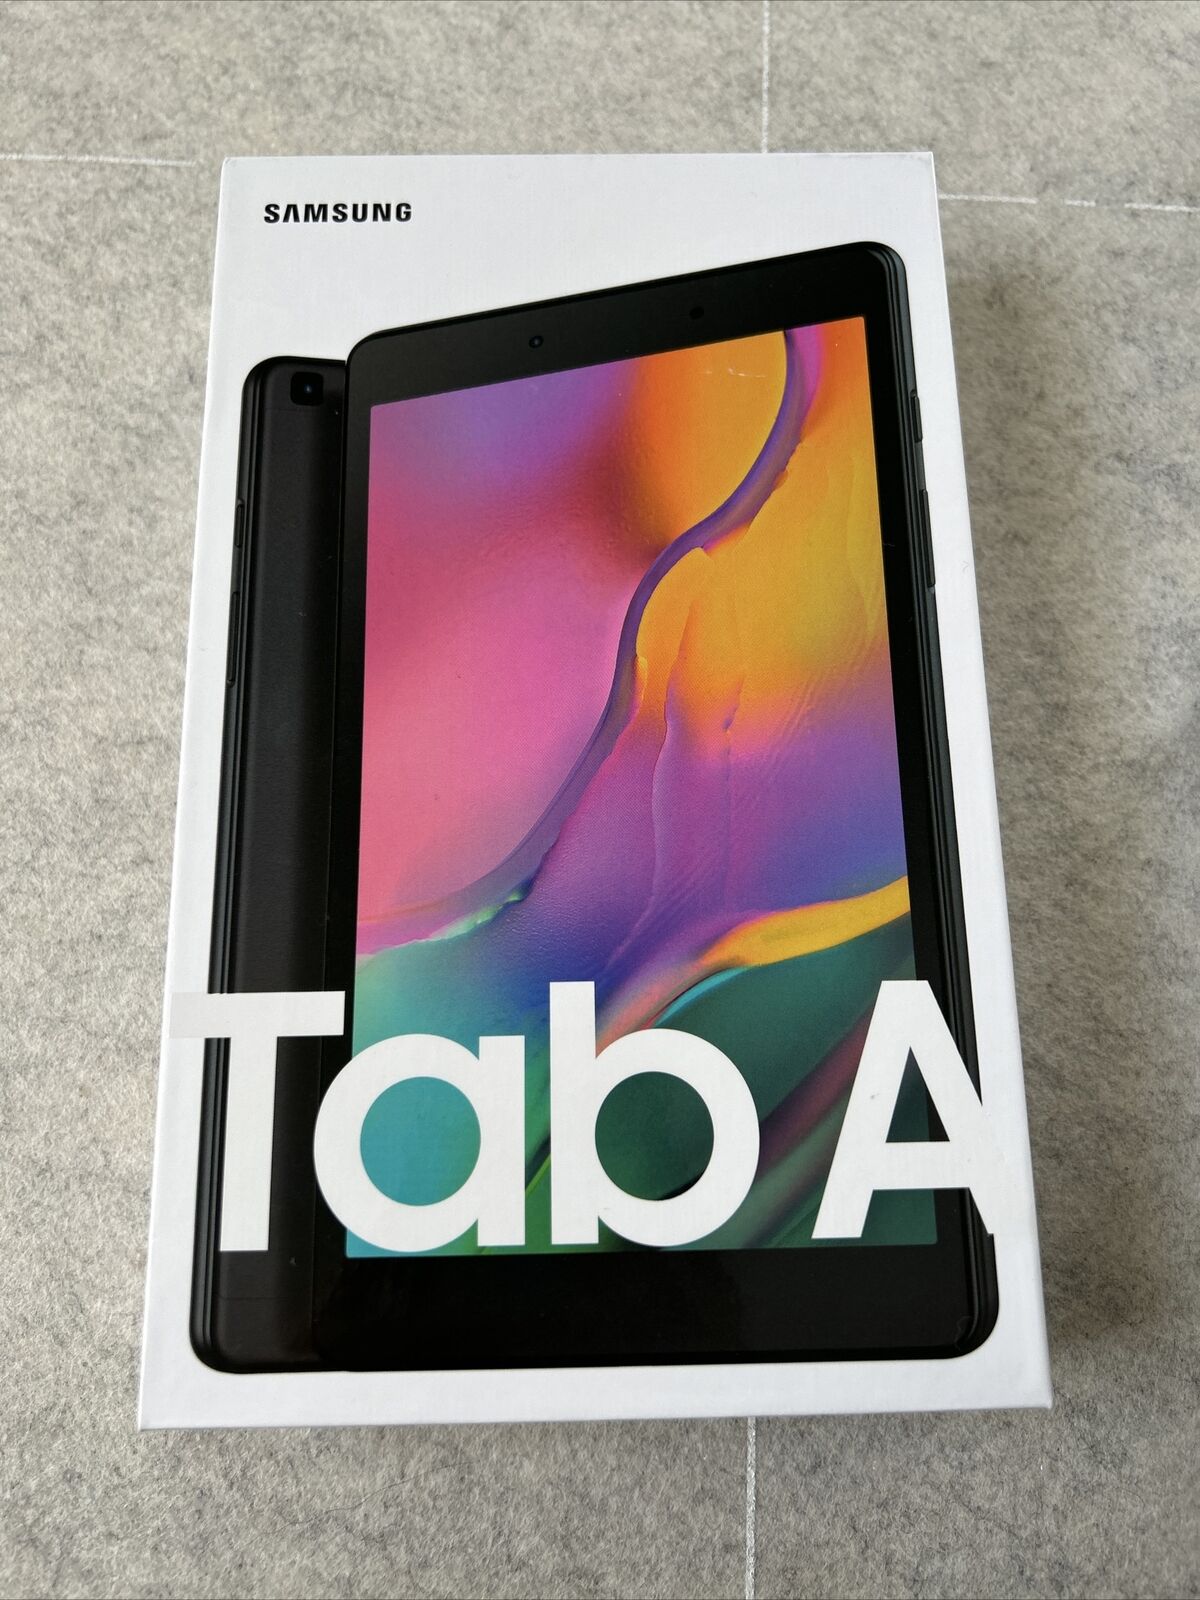 NEW Samsung Galaxy Tab A 32GB, Wi-Fi (Unlocked) 8 inch Tablet-Black